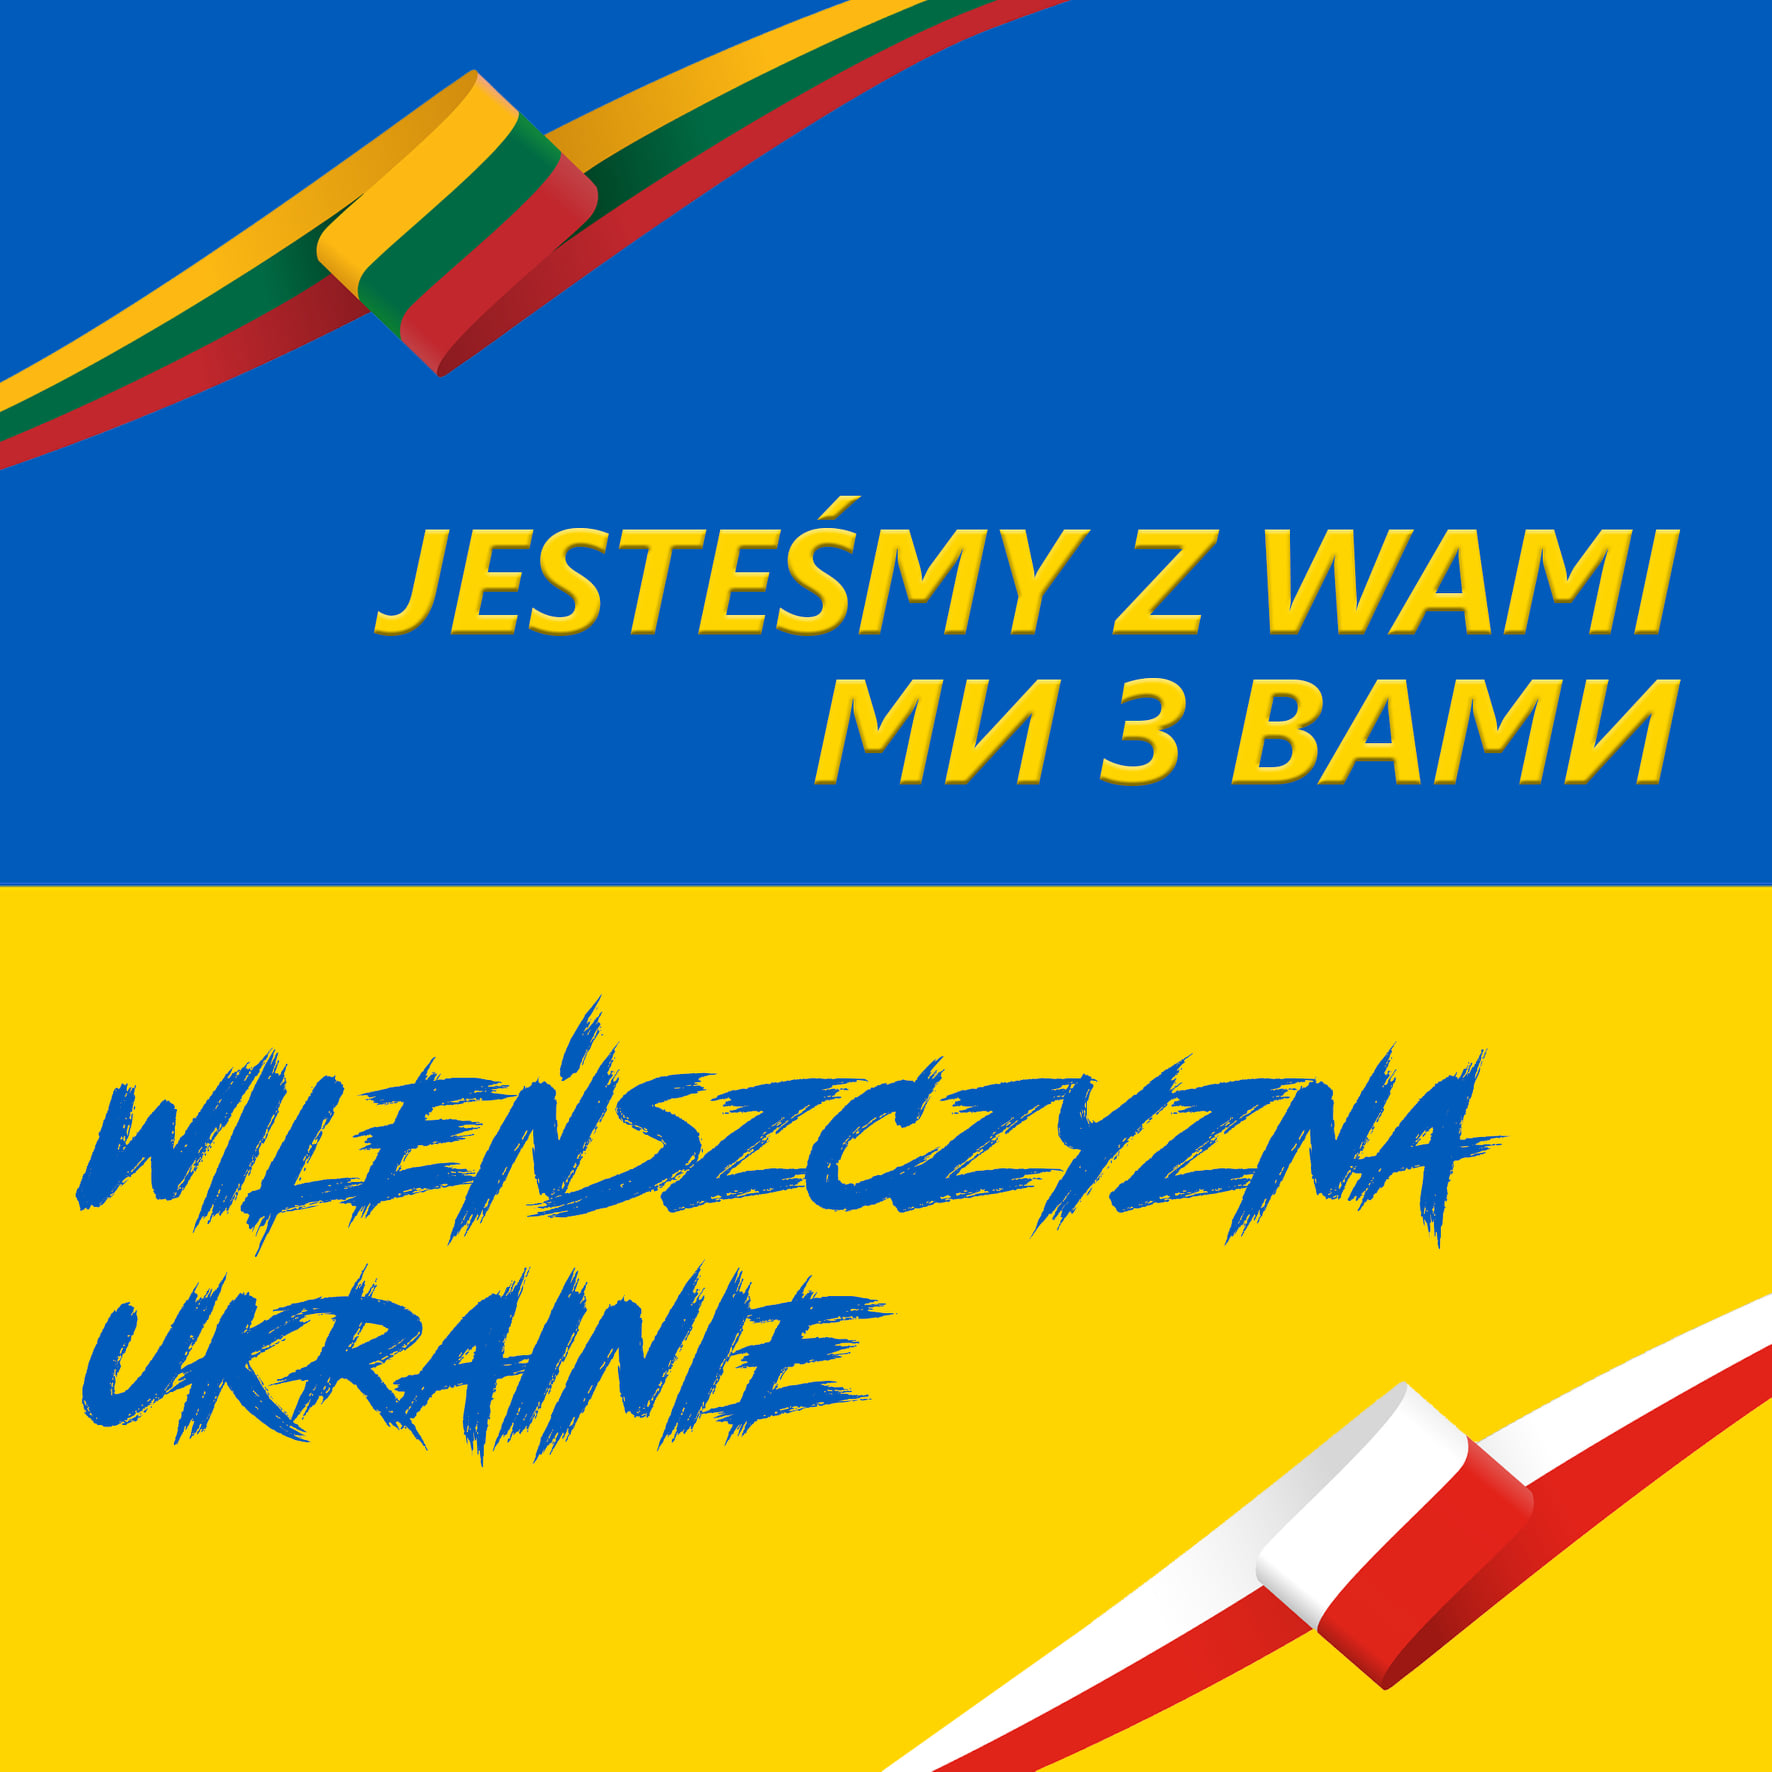 О Польском доме и о помощи украинцам, а также о фляках и веселых праздниках